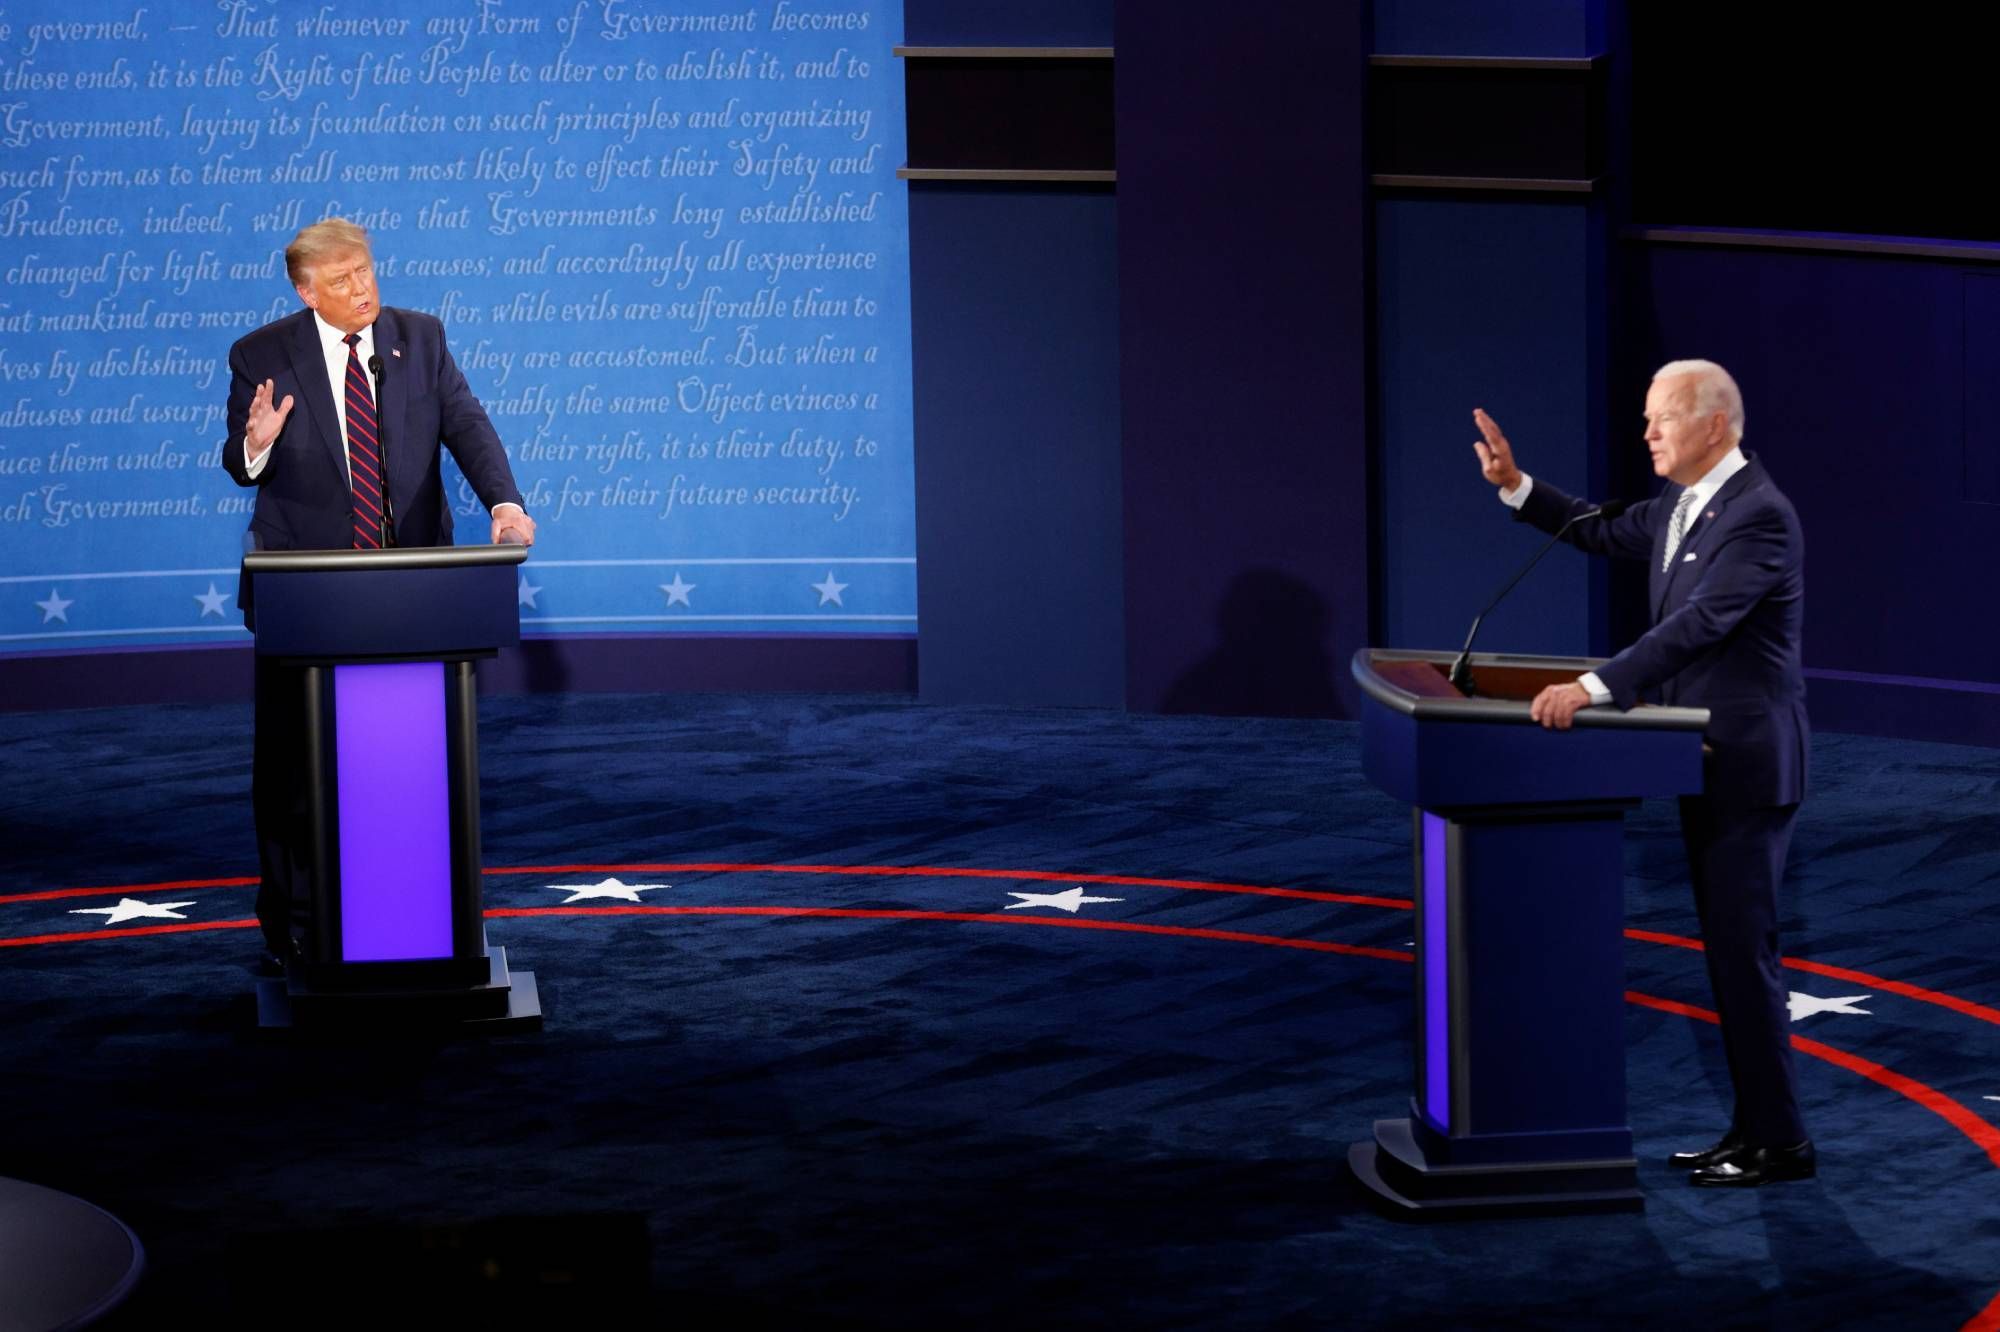 Les moments forts du débat houleux entre Donald Trump et Joe Biden